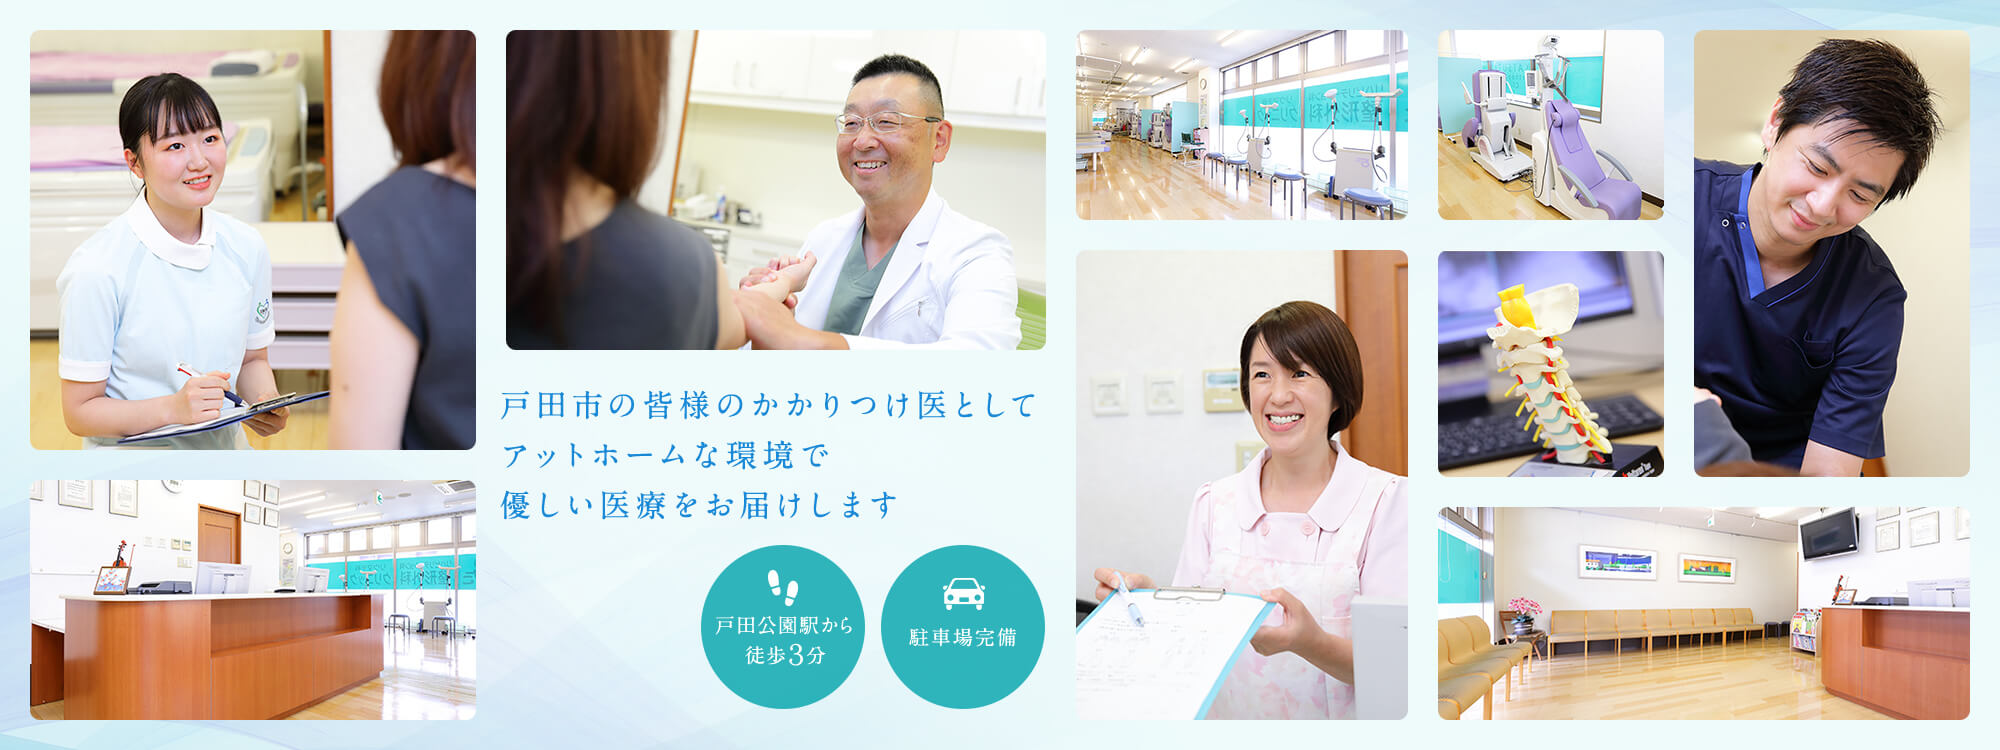 戸田市の皆様のかかりつけ医としてアットホームな環境で優しい医療をお届けします